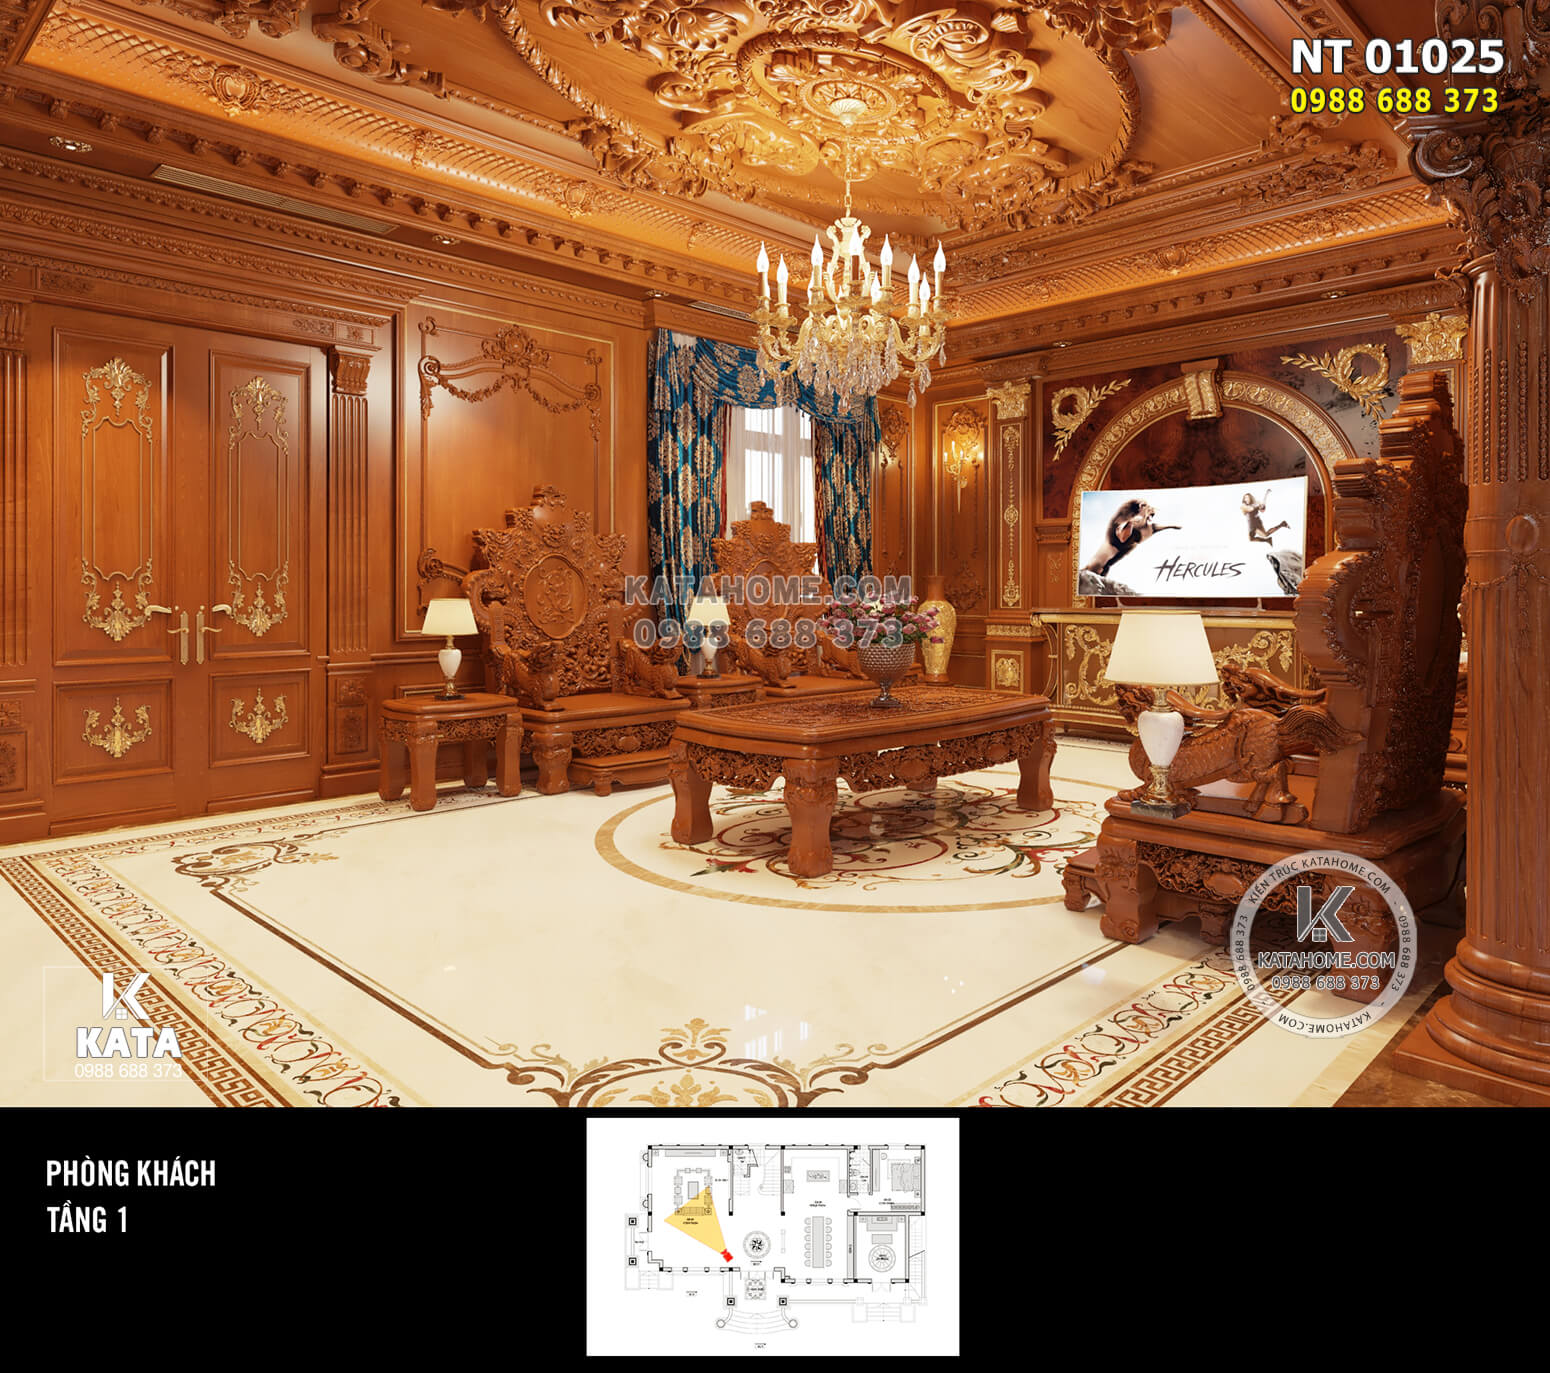 Thiết kế nội thất phòng khách ấn tượng với hệ gỗ trần tường bằng gỗ gõ đỏ tự nhiên cao cấp